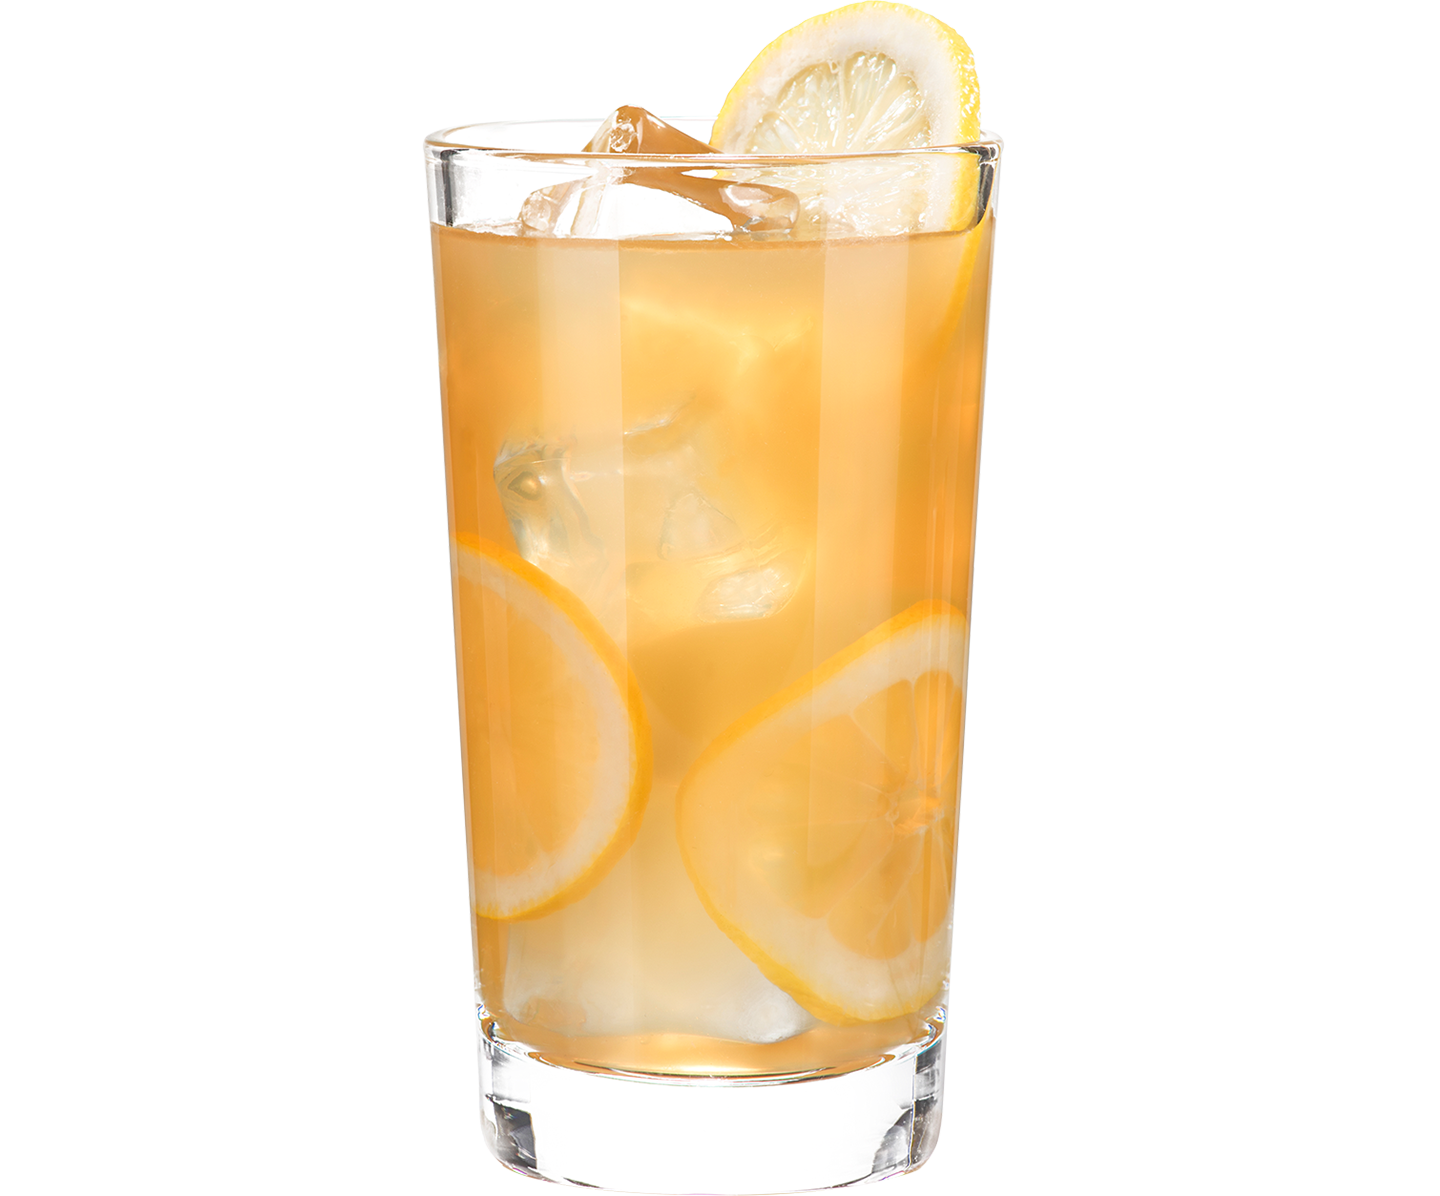 D'USSÉ and Lemonade